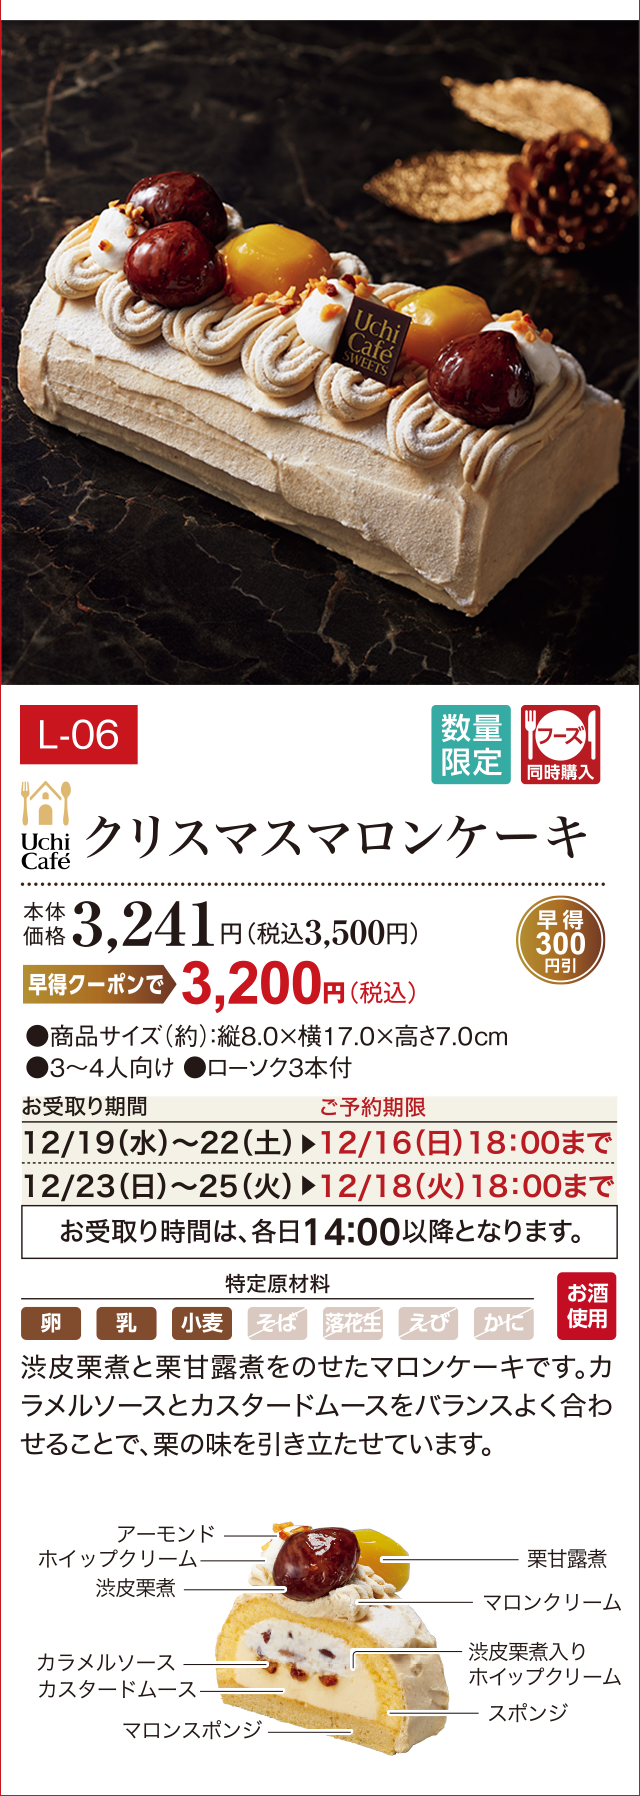 クリスマスマロンケーキ 本体価格 3,241円(税込3,500円)